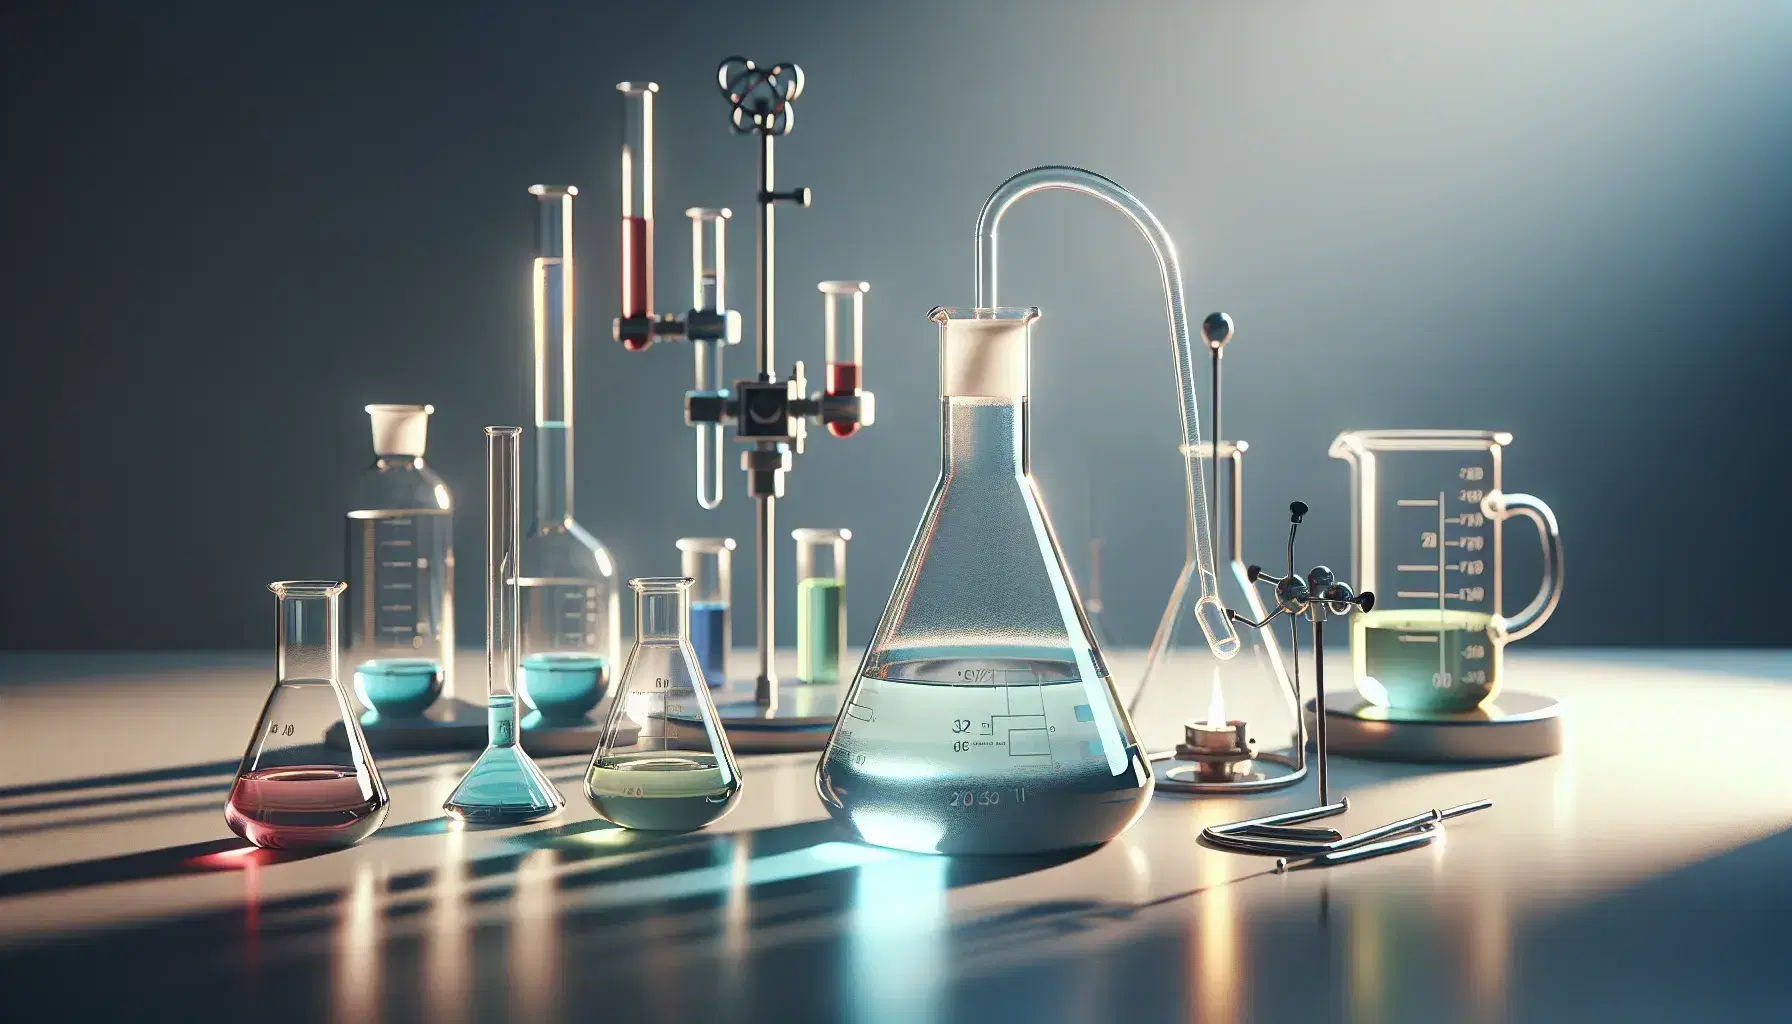 Laboratorio químico con matraz Erlenmeyer y líquido azul, tubo de ensayo amarillo en soporte, mechero Bunsen encendido y frascos de colores en fondo desenfocado.